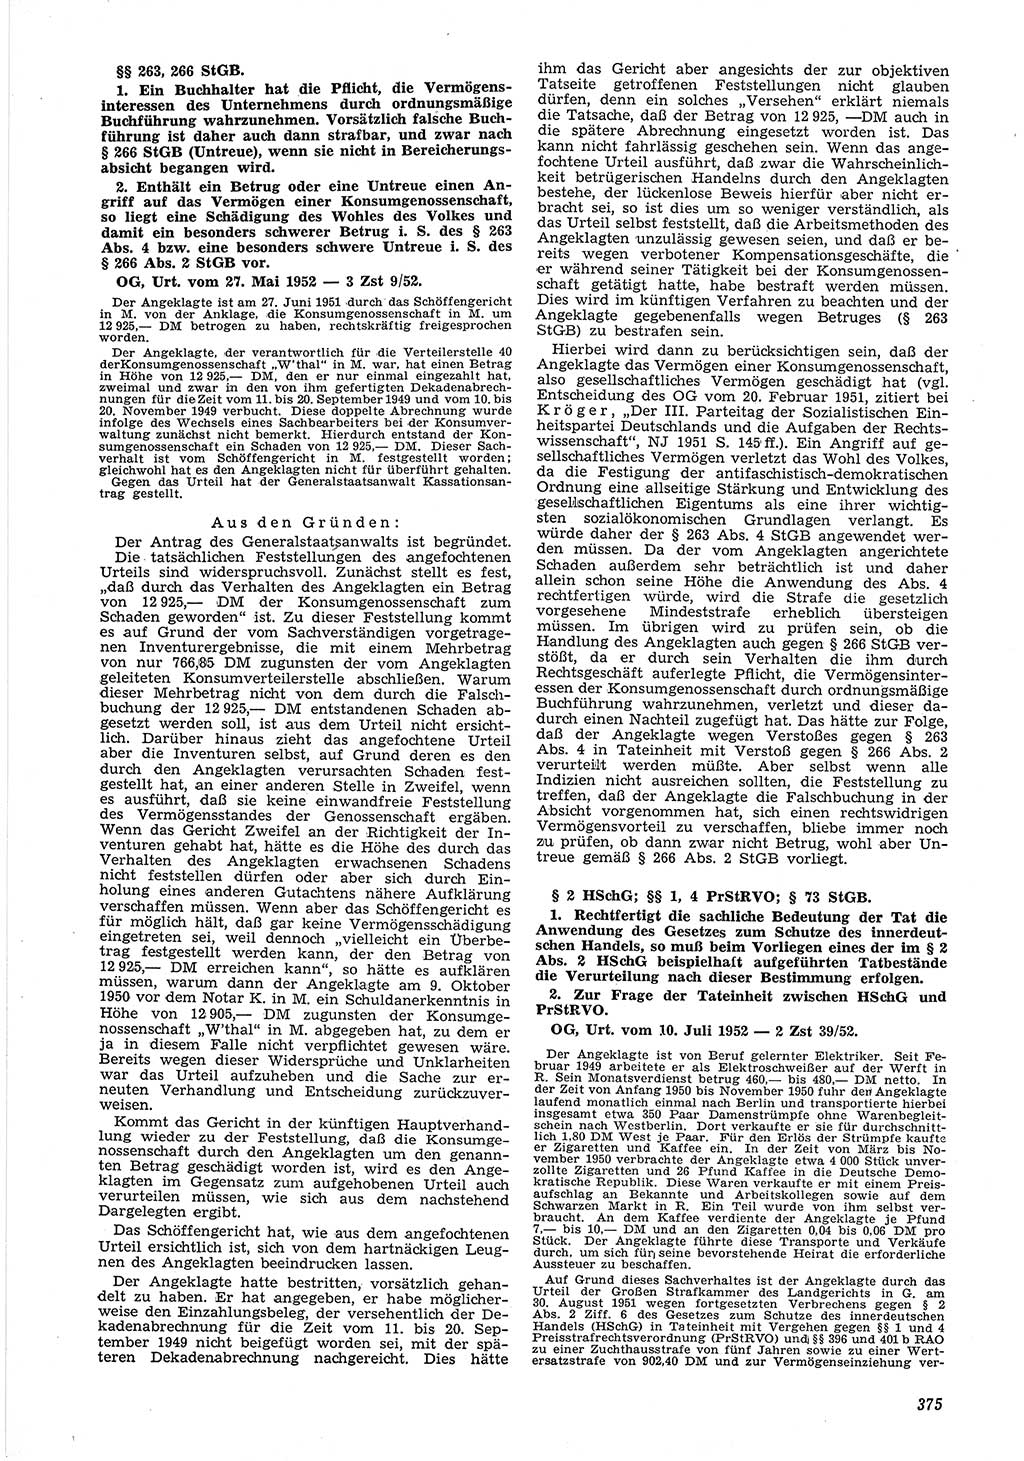 Neue Justiz (NJ), Zeitschrift für Recht und Rechtswissenschaft [Deutsche Demokratische Republik (DDR)], 6. Jahrgang 1952, Seite 375 (NJ DDR 1952, S. 375)